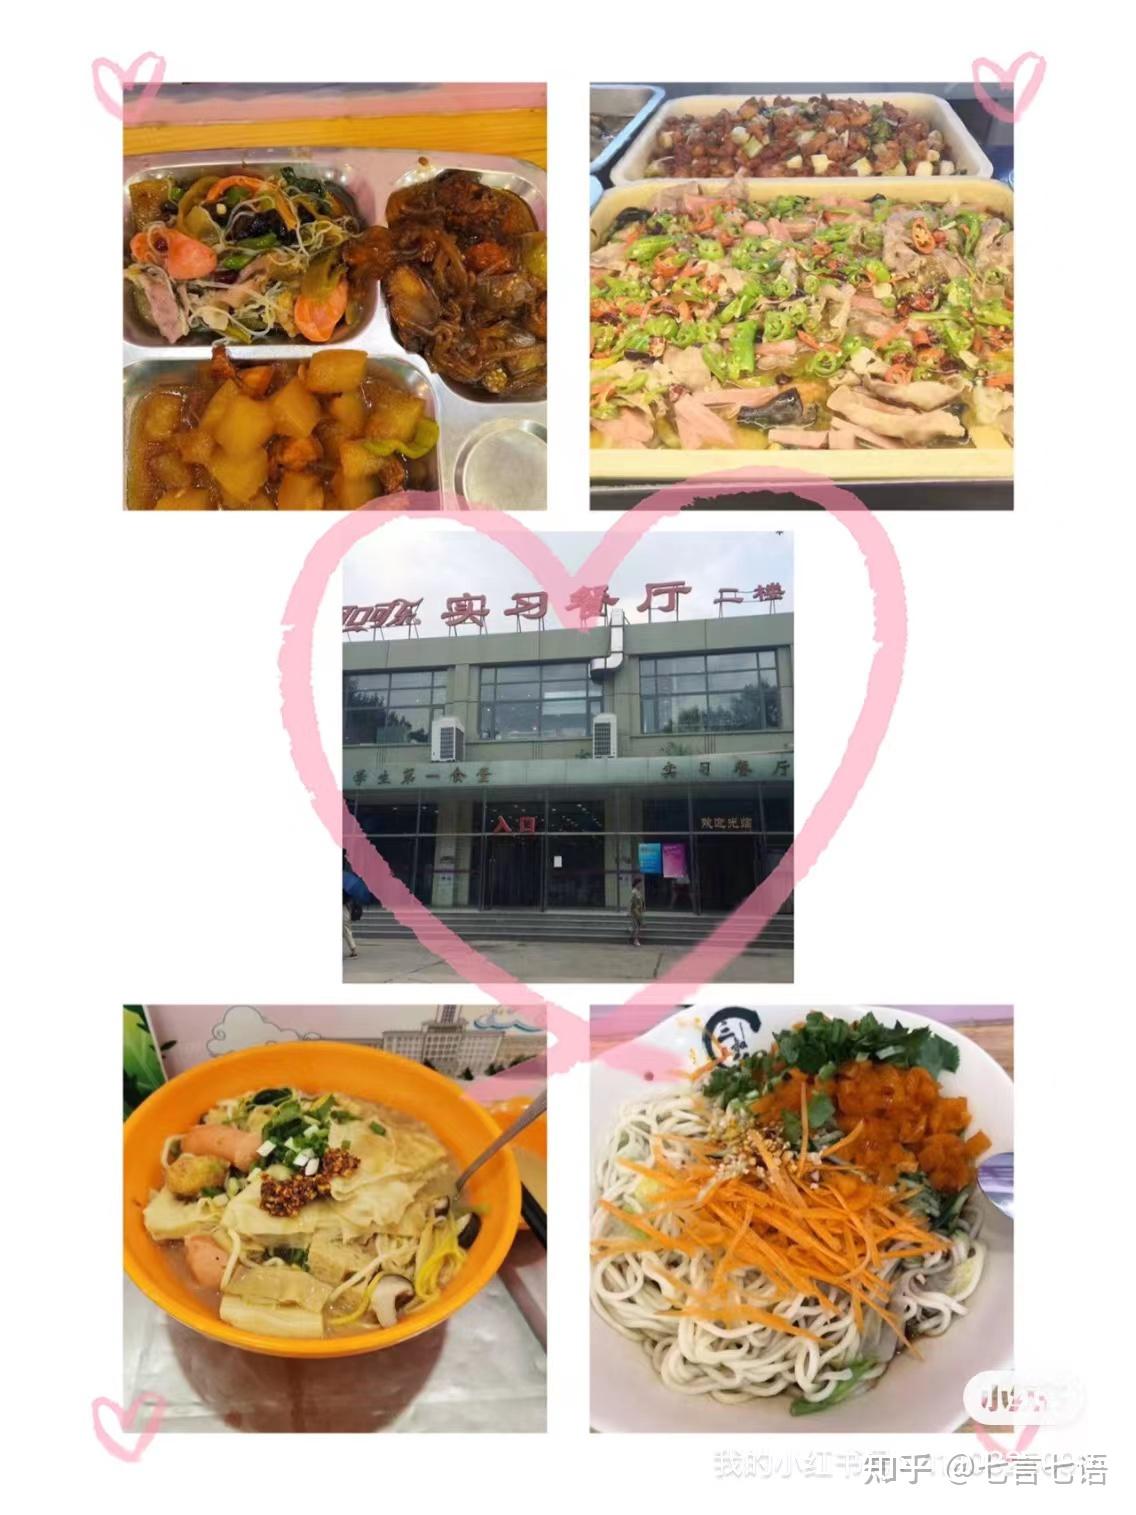 中国哪些大学食堂东西好吃？ - 知乎